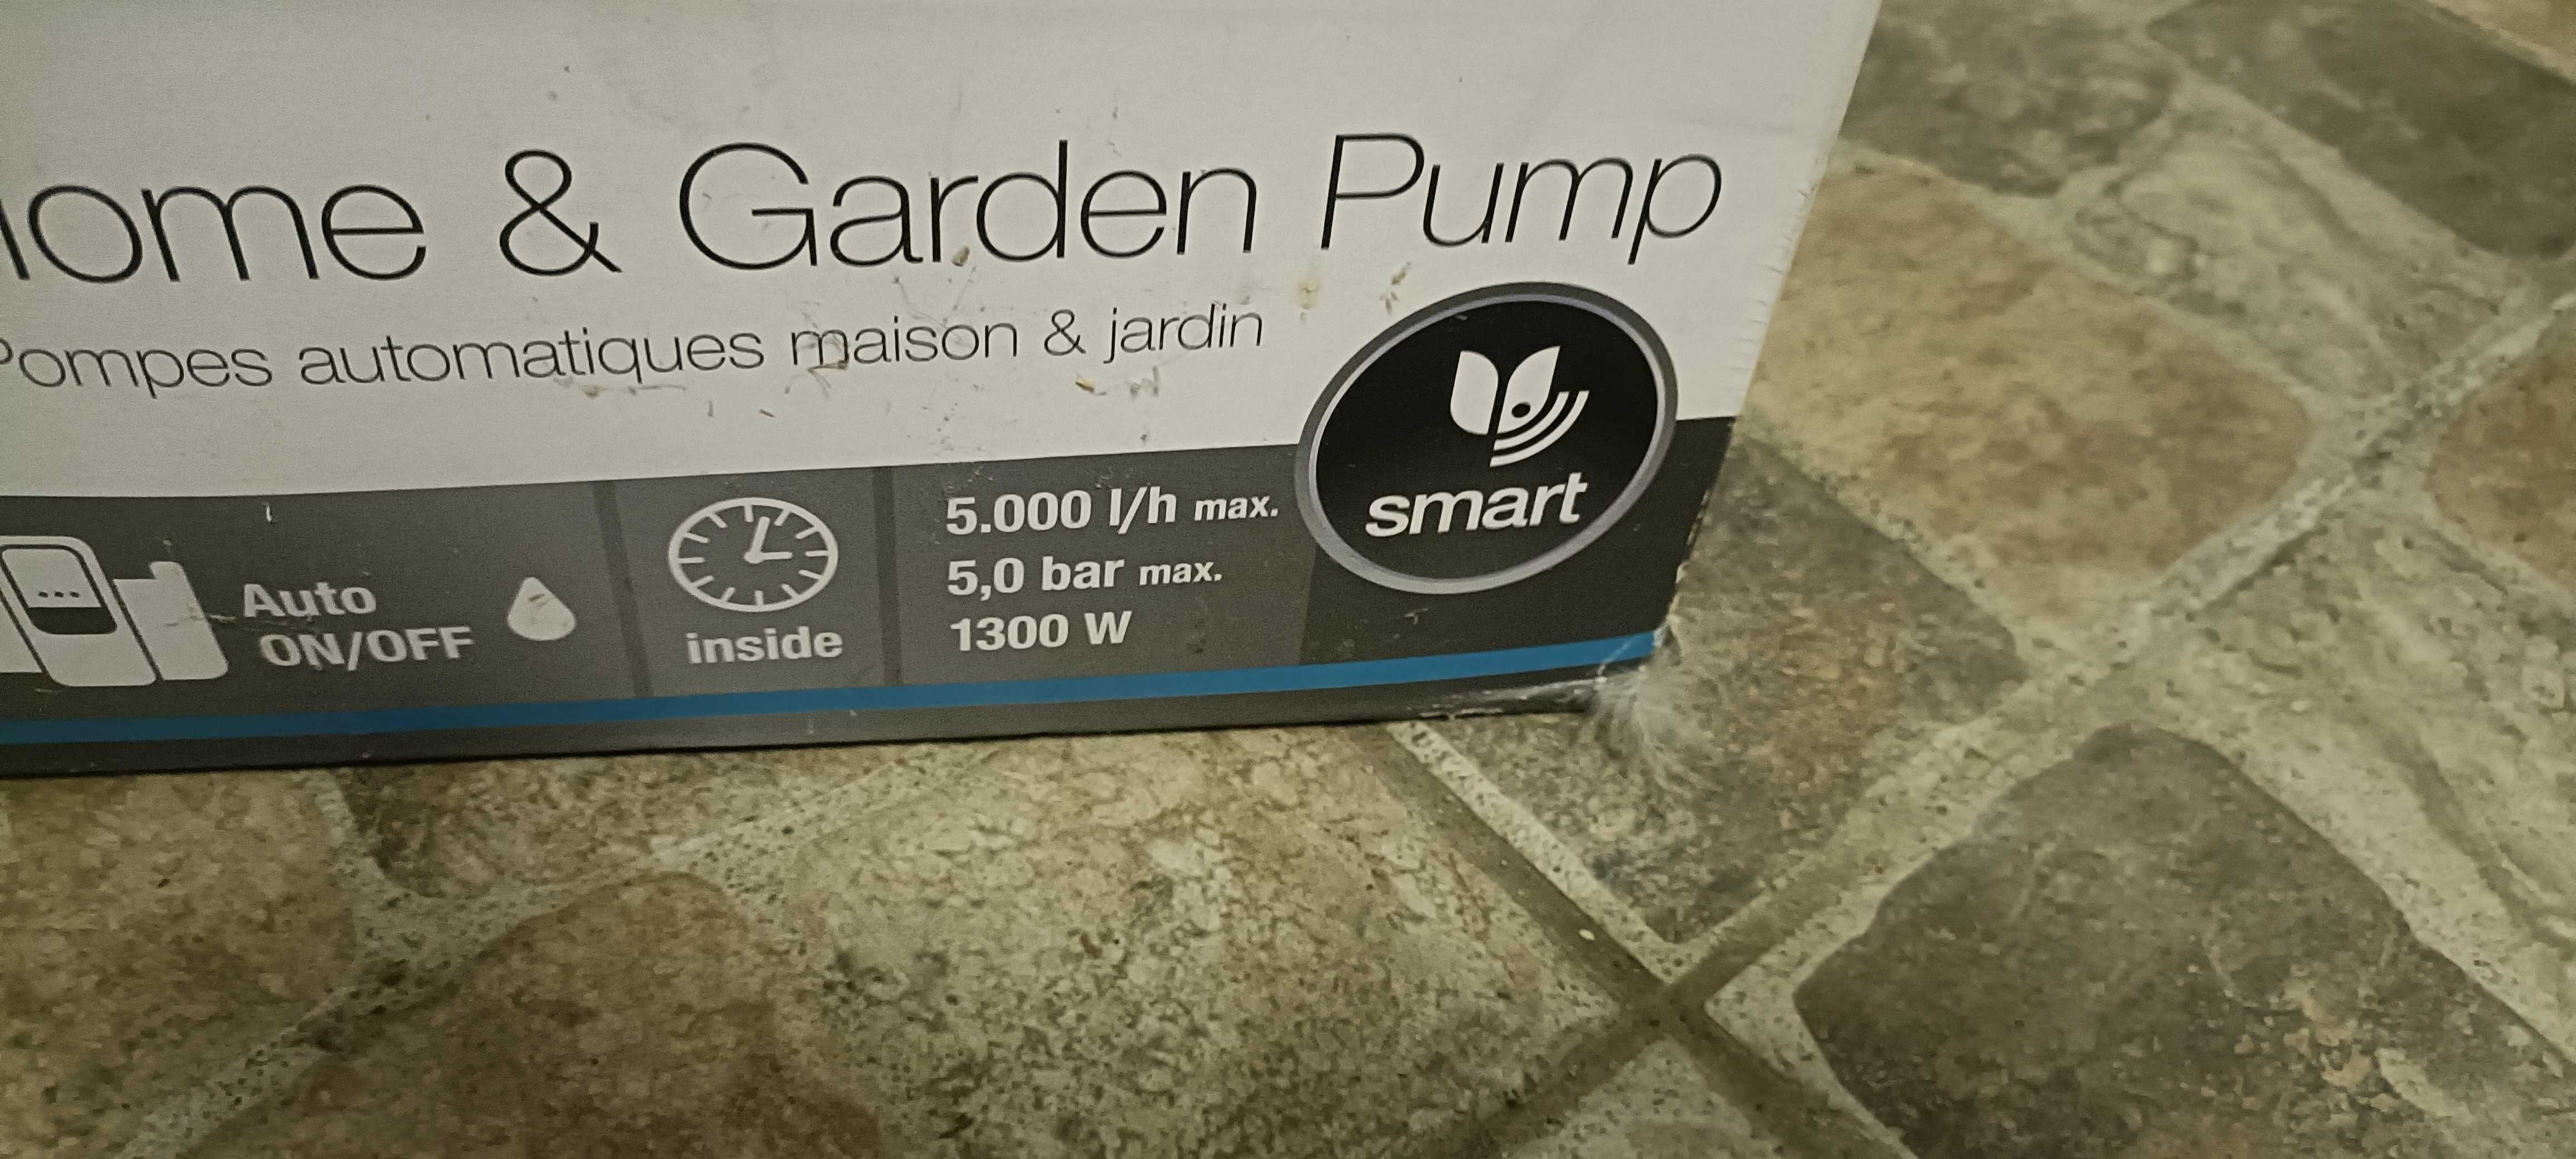 Pompa Gardena Smart